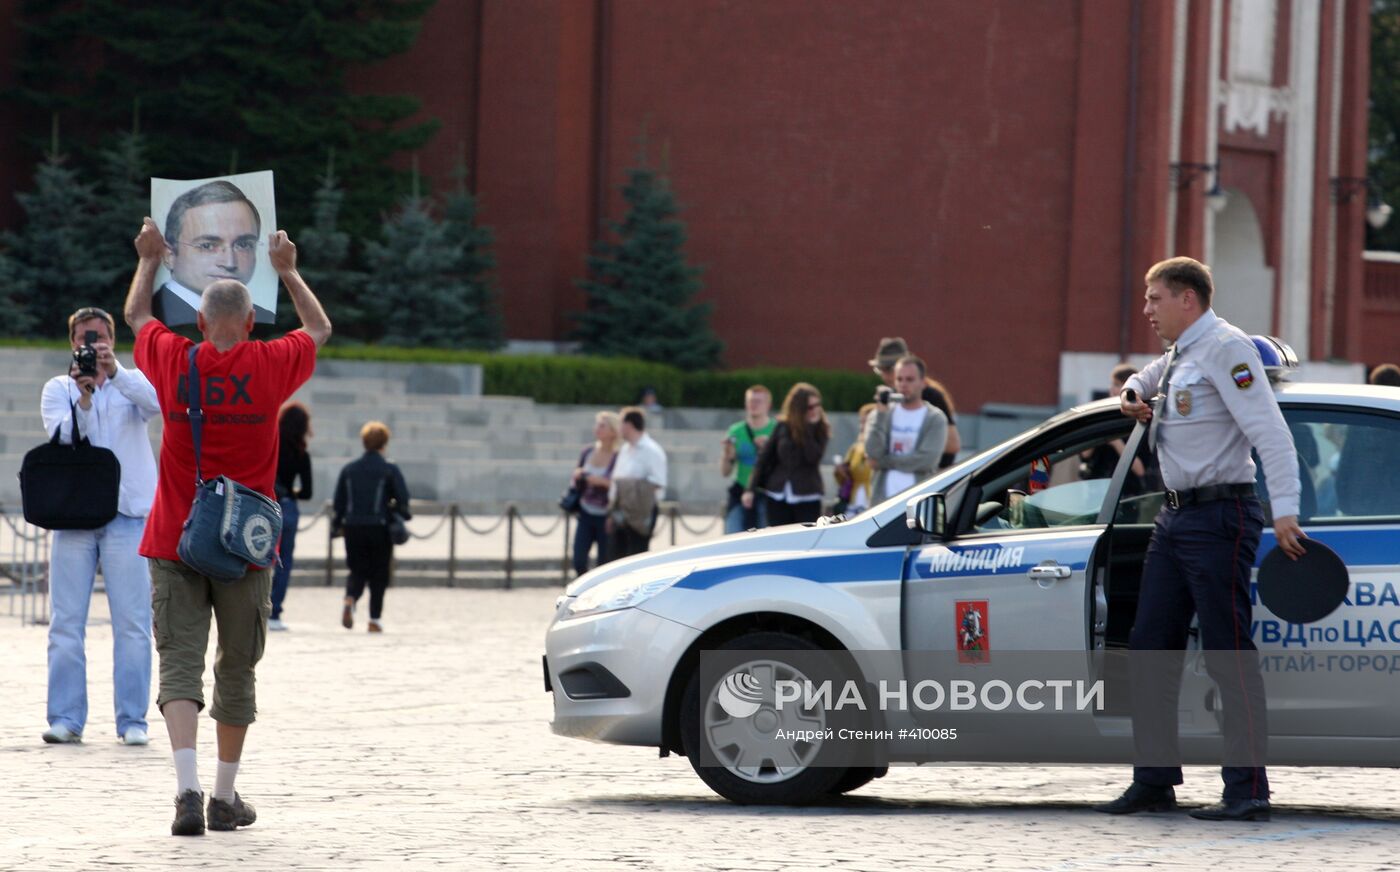 Сторонники Михаила Ходорковского вышли на Красную площадь